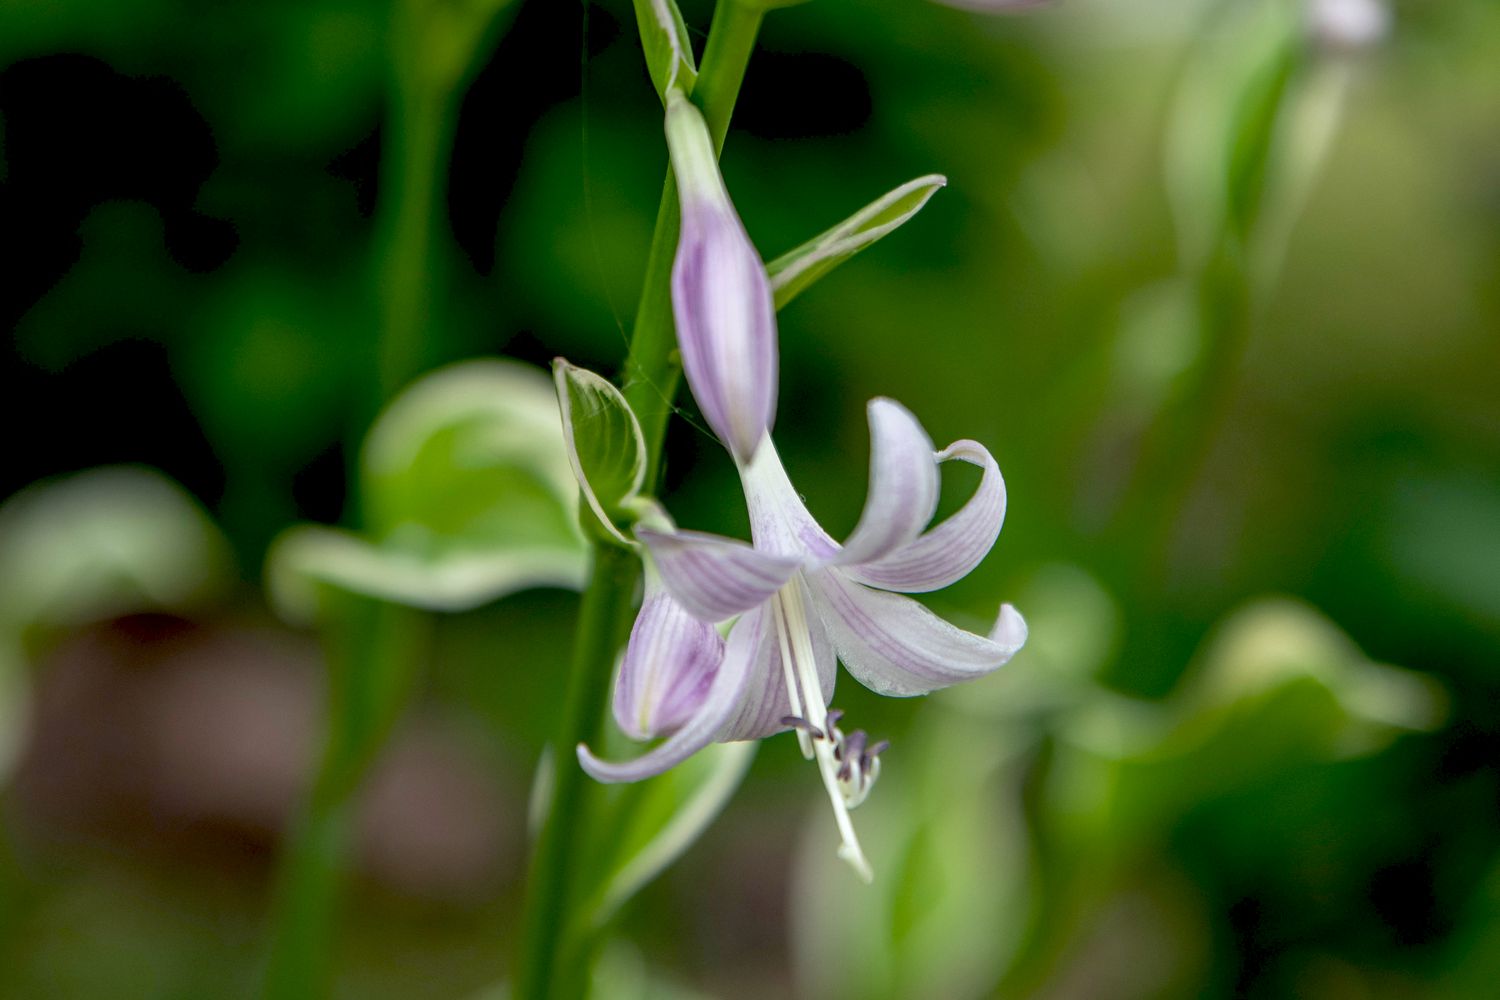 Tallo de planta hosta Francee con pequeño primer plano de flor blanca y lavanda